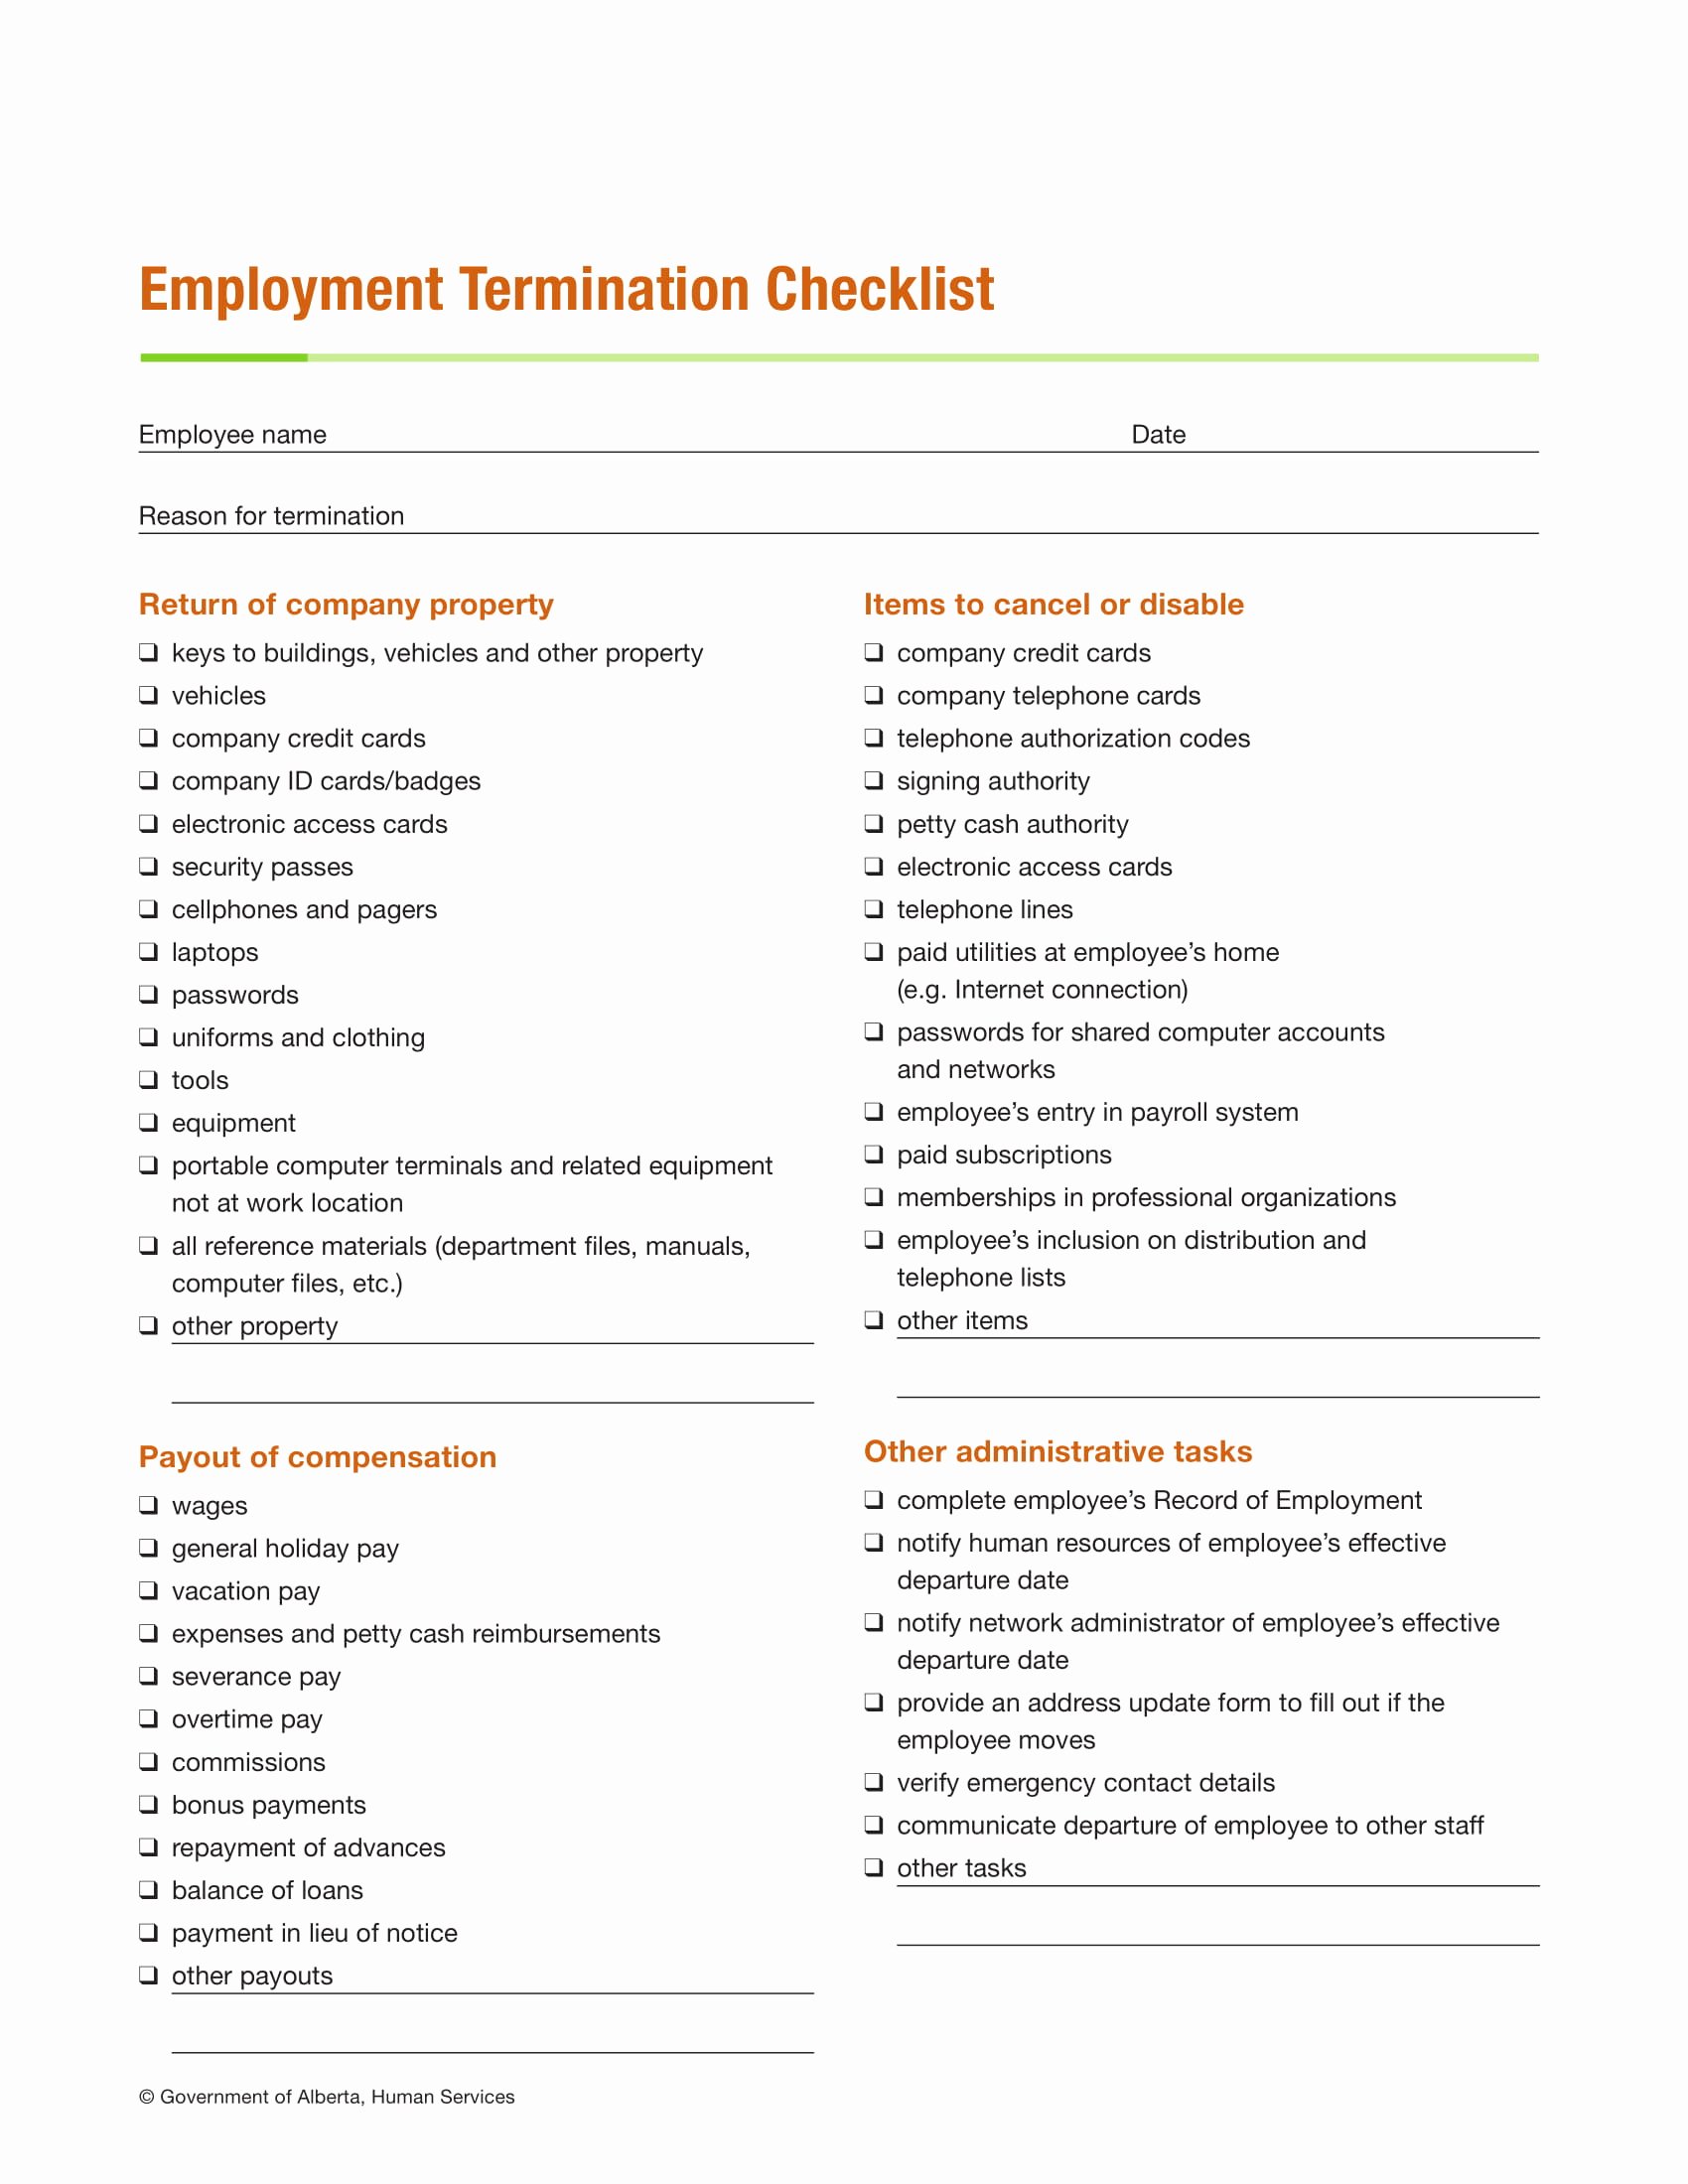 Employment Termination Checklist Template Luxury 9 Termination Checklist Examples Pdf